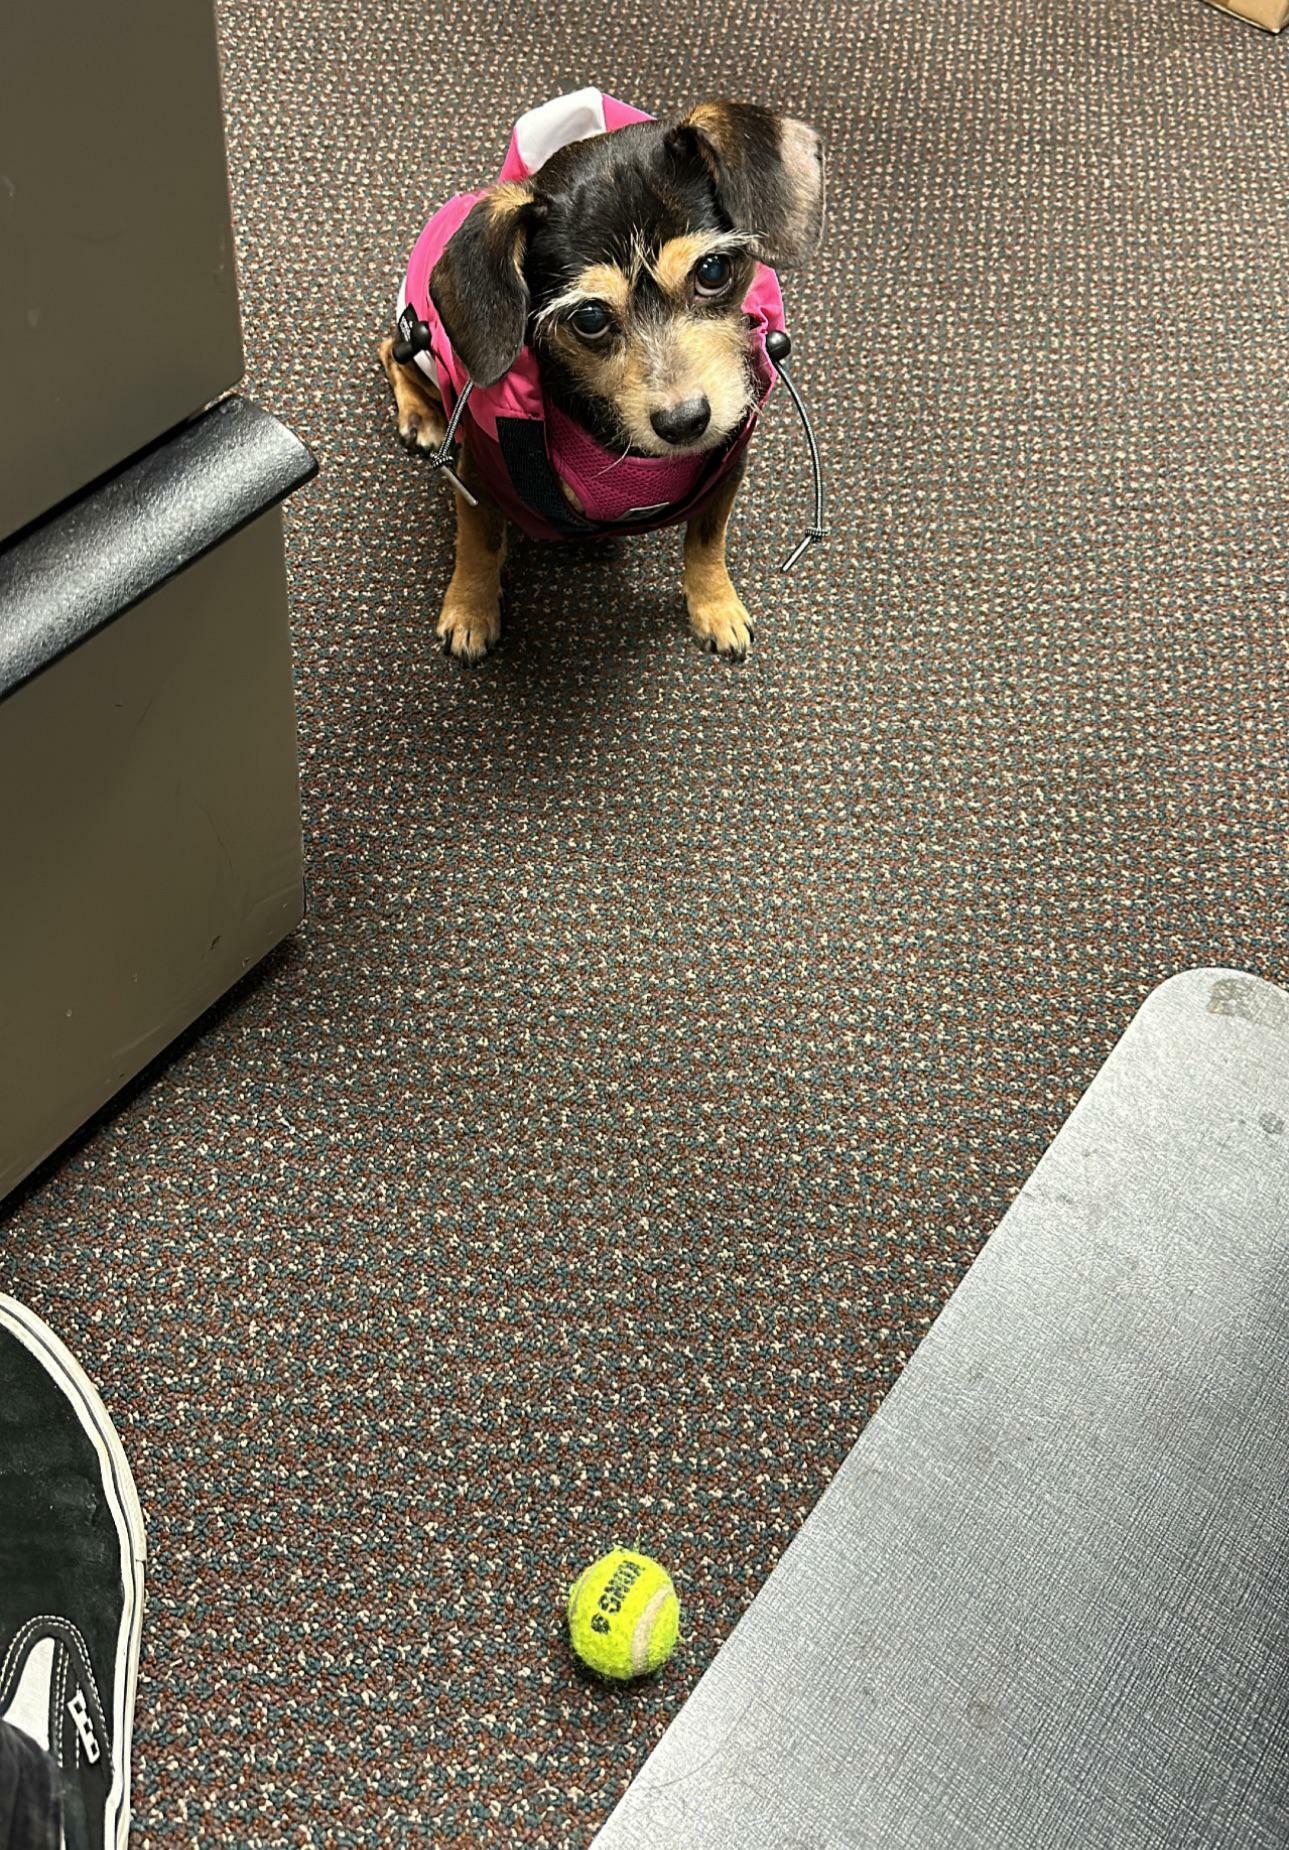 J’ai amené Lumen au bureau aujourd’hui. Elle adore apporter le ballon à tout le monde pour qu’ils puissent le lancer pour elle.